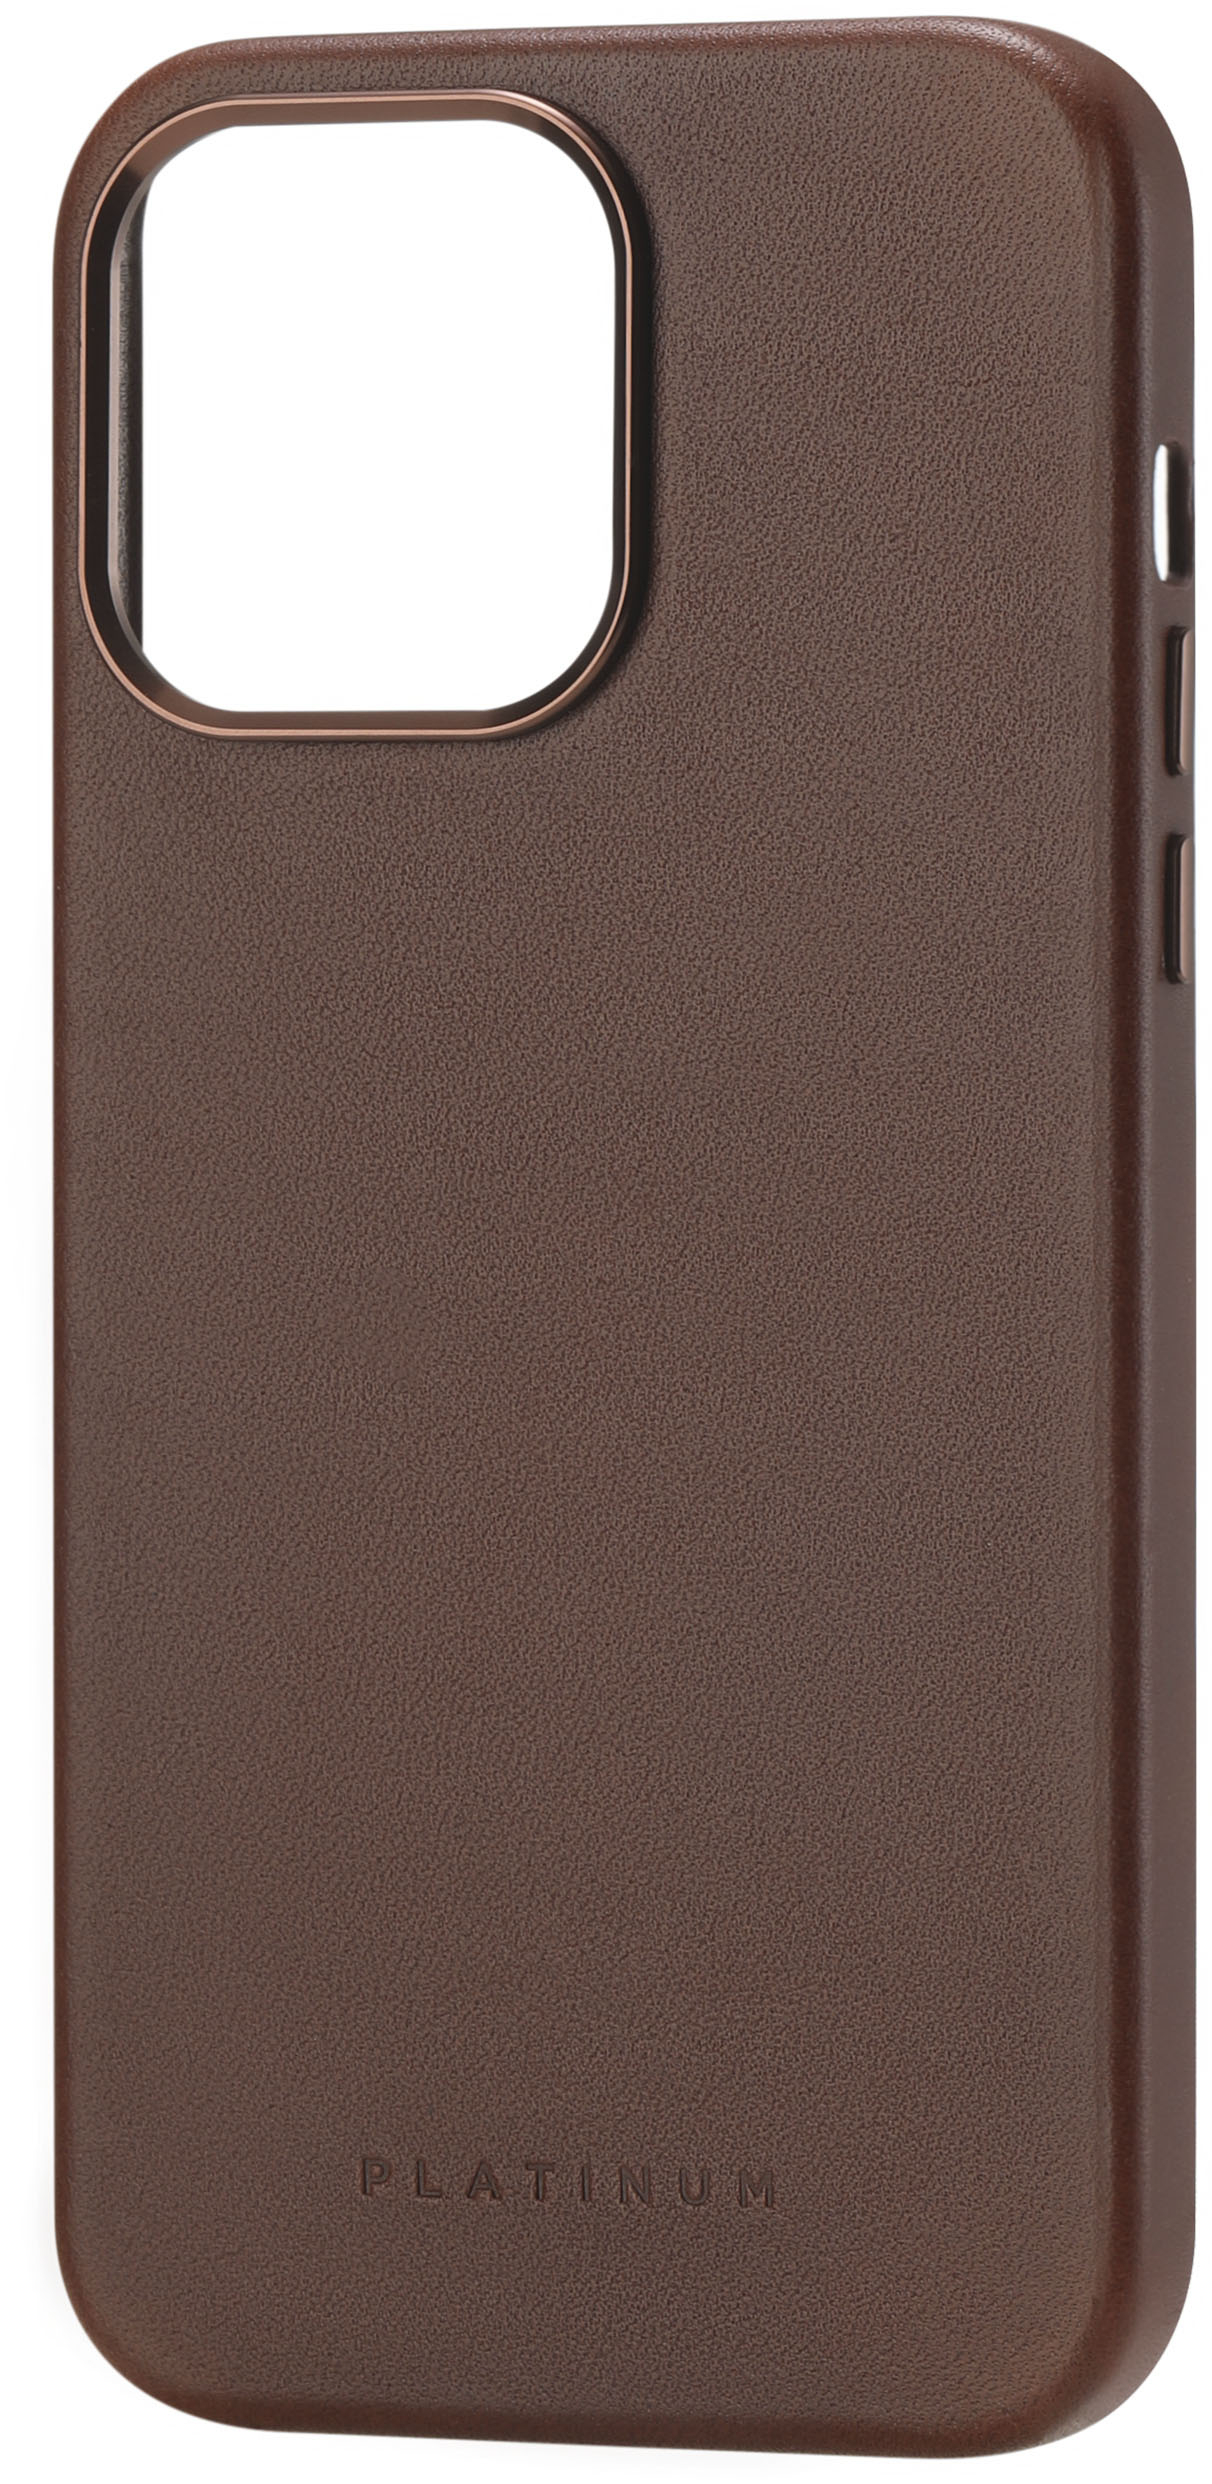 Horizontal Hard Leather iPhone Case - Leathersmith Designs Inc.